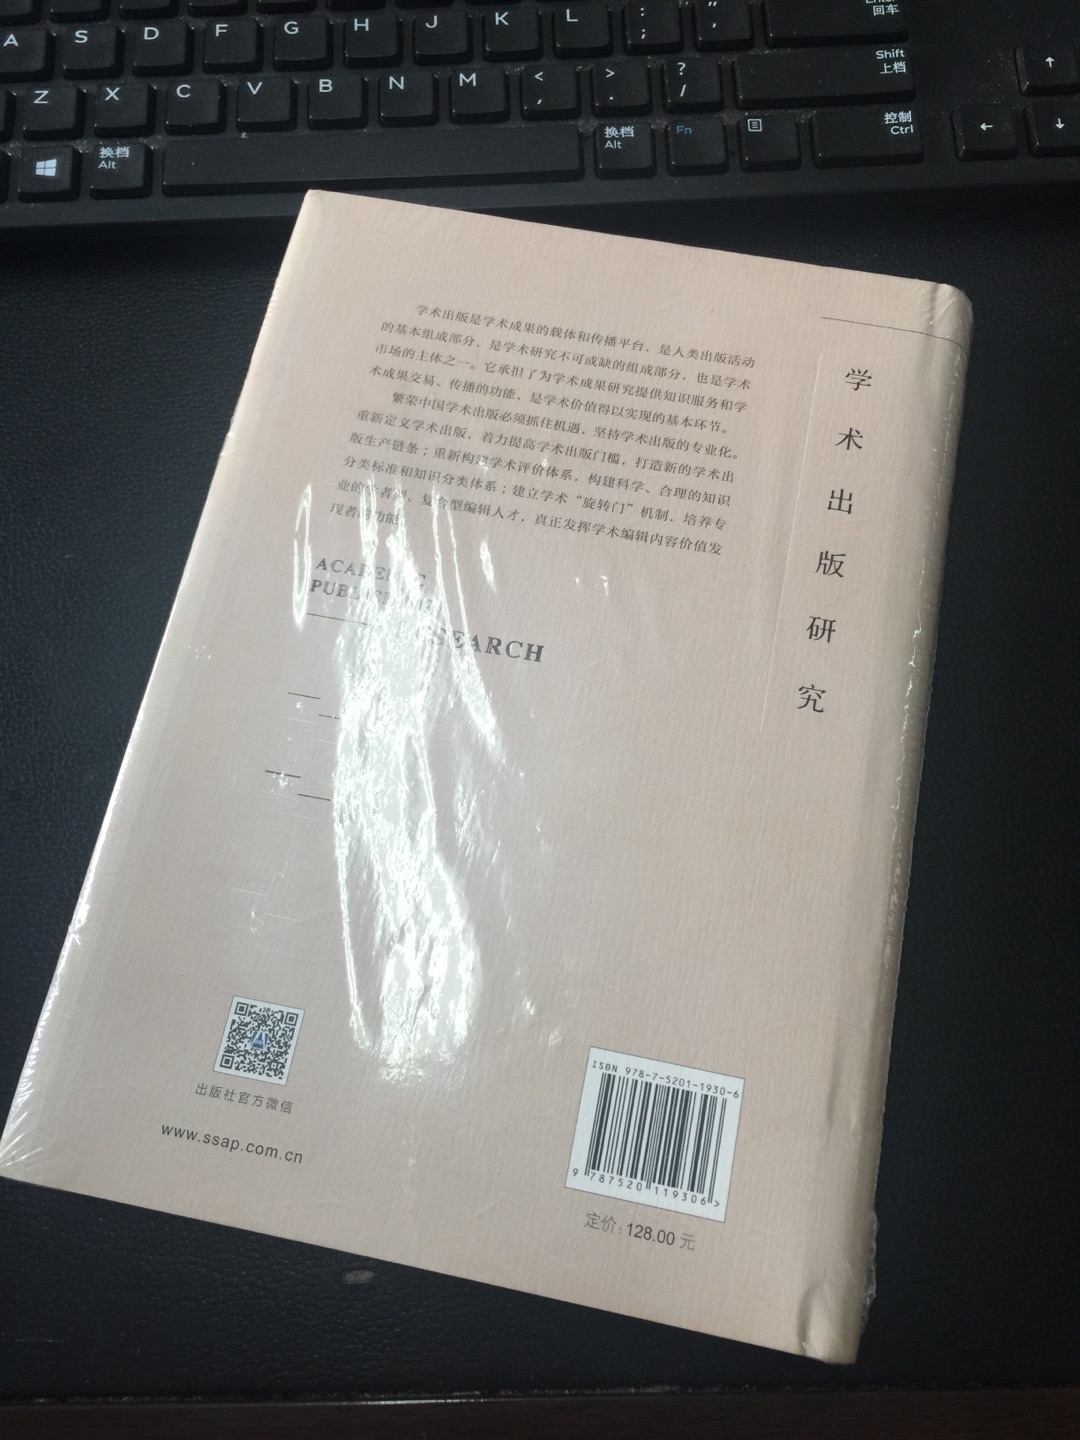 本书是“中国学术图书质量分析与学术出版能力建设 ”课题的结项成果，内容包括：一、问题的提出：中国学术出版步入大繁荣、大发展的美好时代；二、学术出版的现状与困境；三、学术出版能力评价指标体系的构建；四、中国学术出版能力的实证评价；五、繁荣发展中国学术出版的对策与建议。六、研究价值与影响力。 中国学术出版具有规模巨大、学术出版工程叠出、学术译著出版长盛不衰、中外学术互动、出版合作日趋密切等发展优势。同时，也受到了投入产出严重不成比例、数量与质量的发展严重不平衡、专业化水平低、学术出版规范严重缺失、学术评价体系紊乱等因素的制约。为此，本课题强调：繁荣中国学术出版必须抓住机遇，坚持学术出版的专业化，重新定义学术出版，着力提高学术出版门槛，打造新的学术出版生产链条；重新构建学术评价体系；构建科学、合理的知识分类标准和知识分类体系；培养专业的学者型、复合型编辑人才。